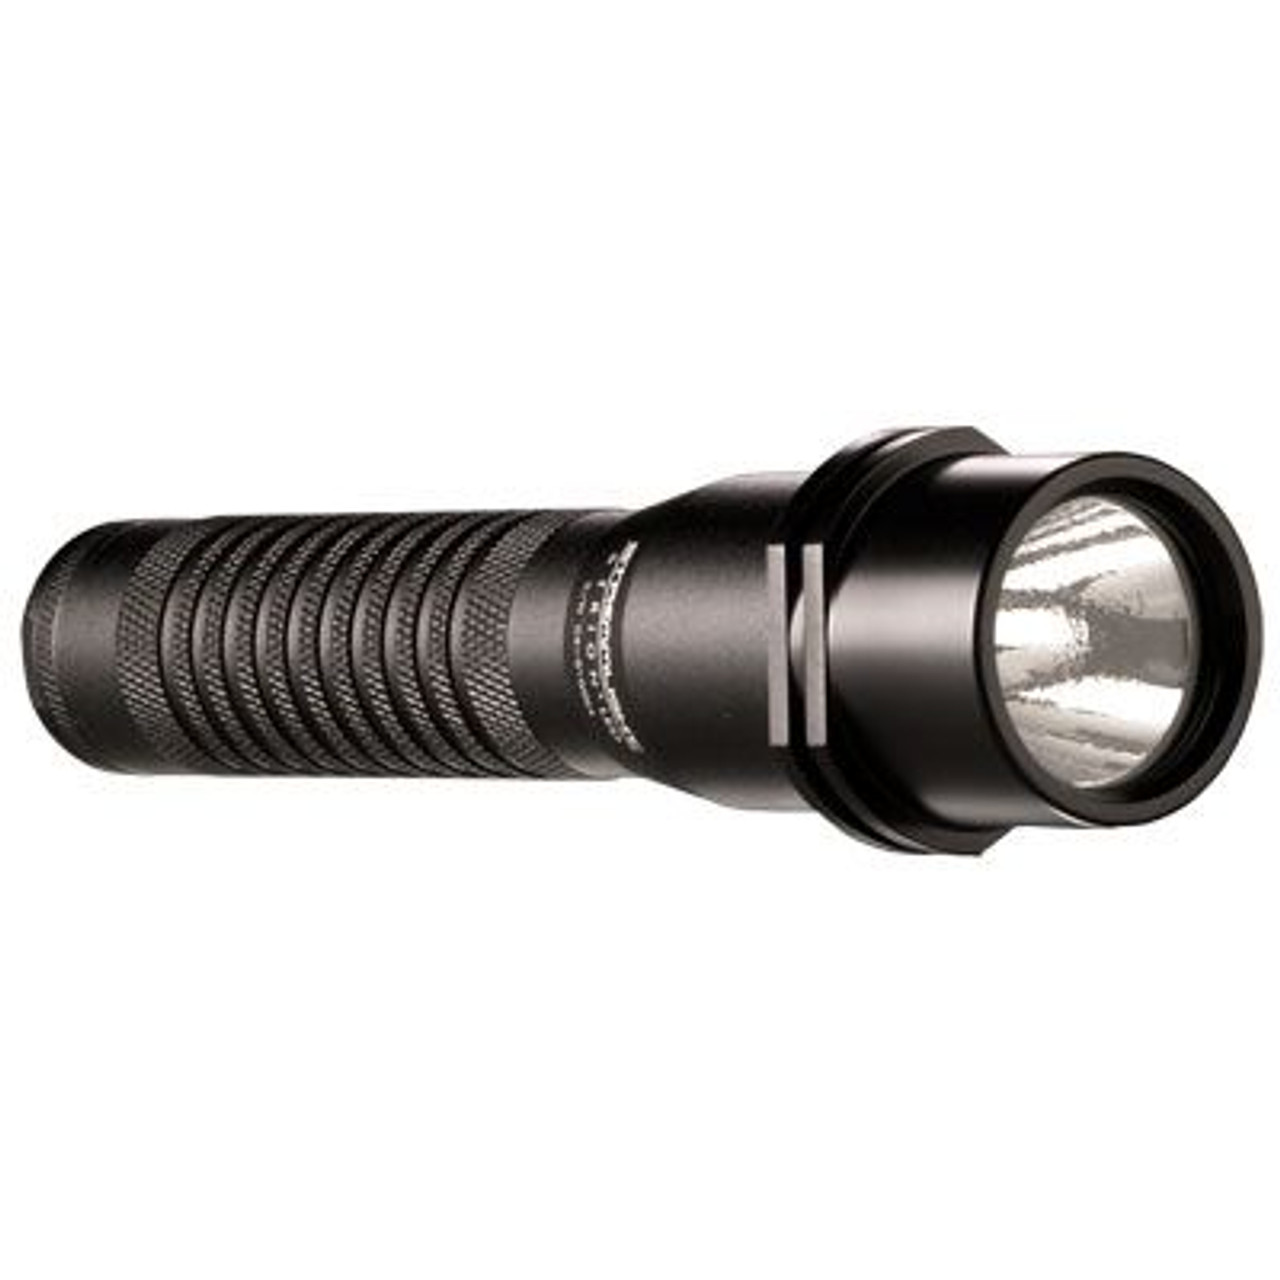 Streamlight 74301 Strion LED -120V/100V AC/DC - 1 Holder - Black - DSS